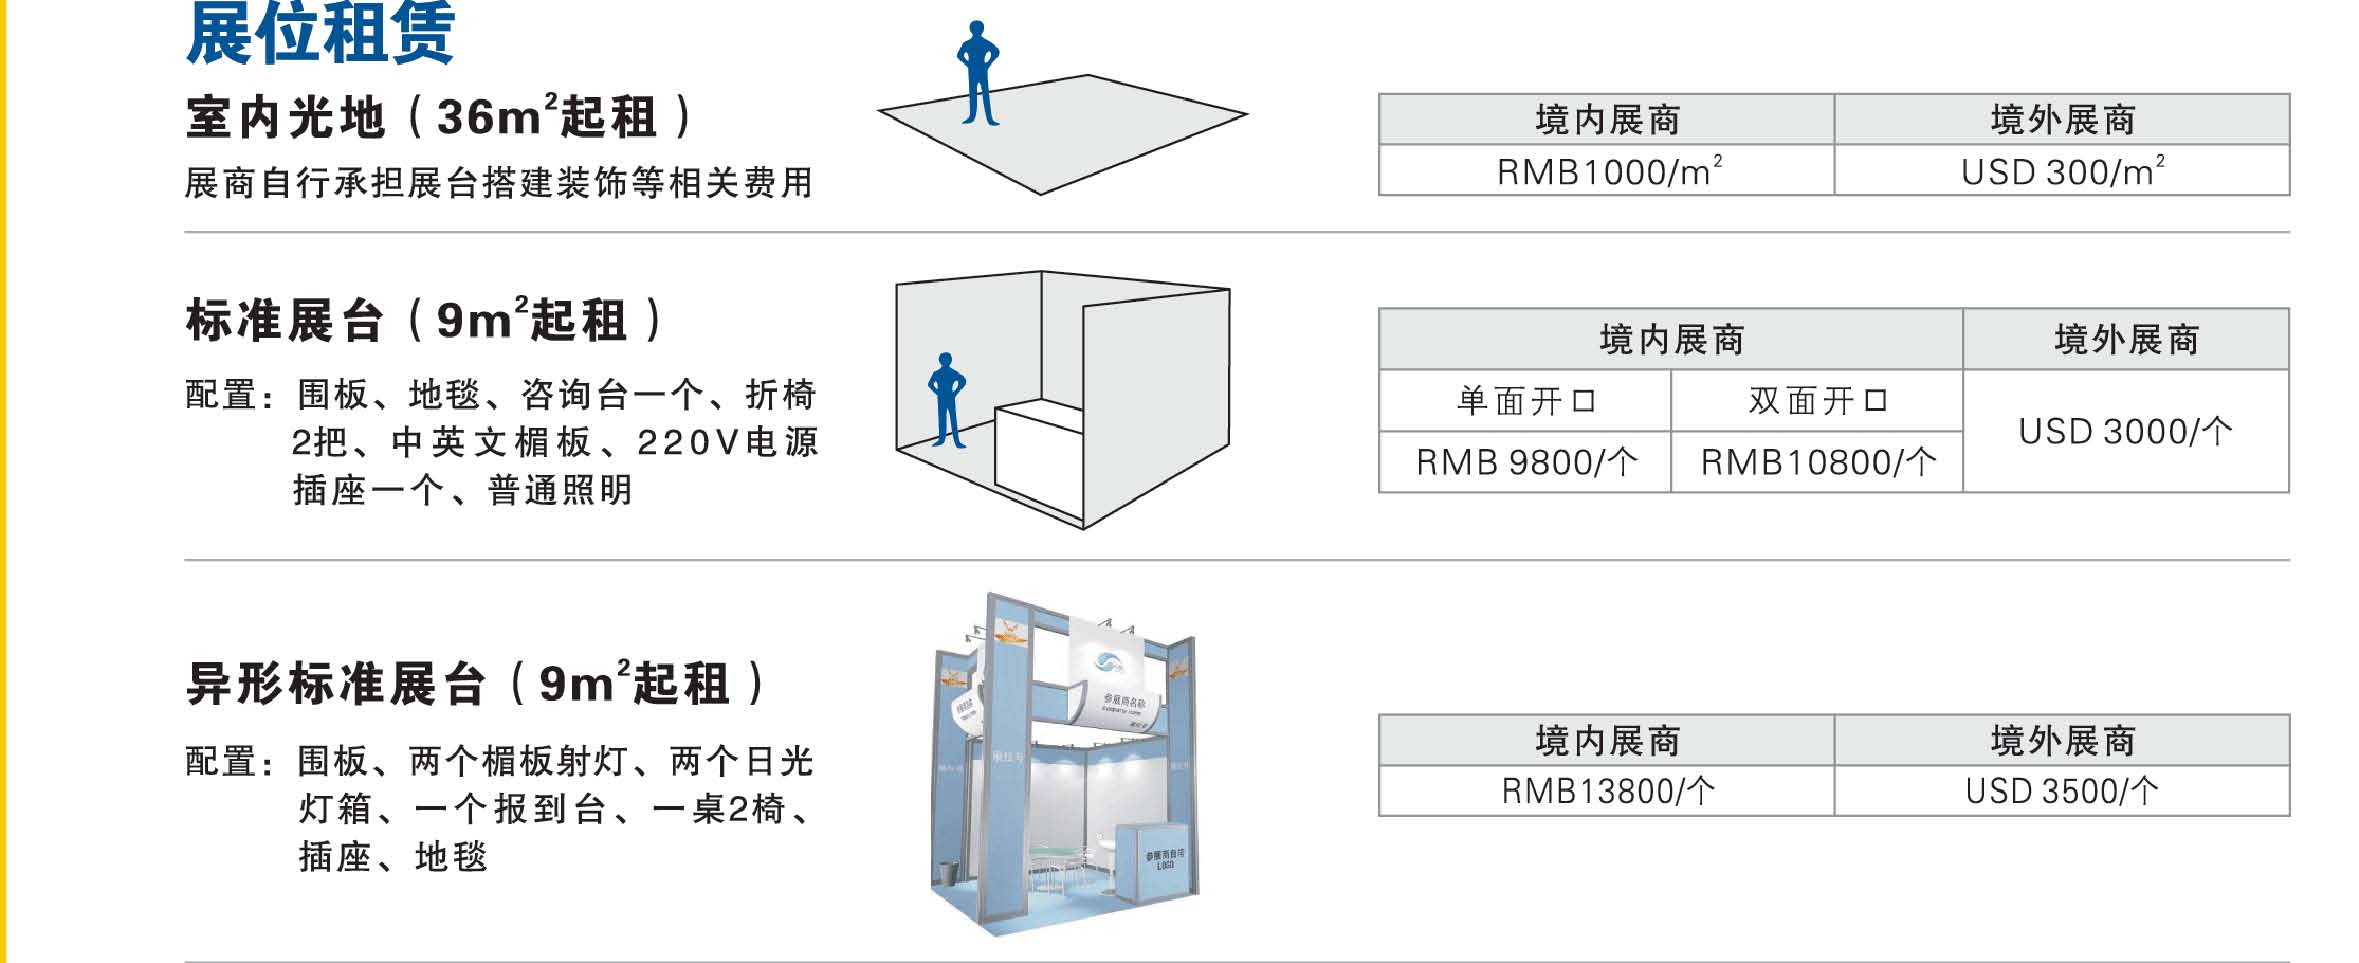 广州物流机器人展-展位价格.jpg